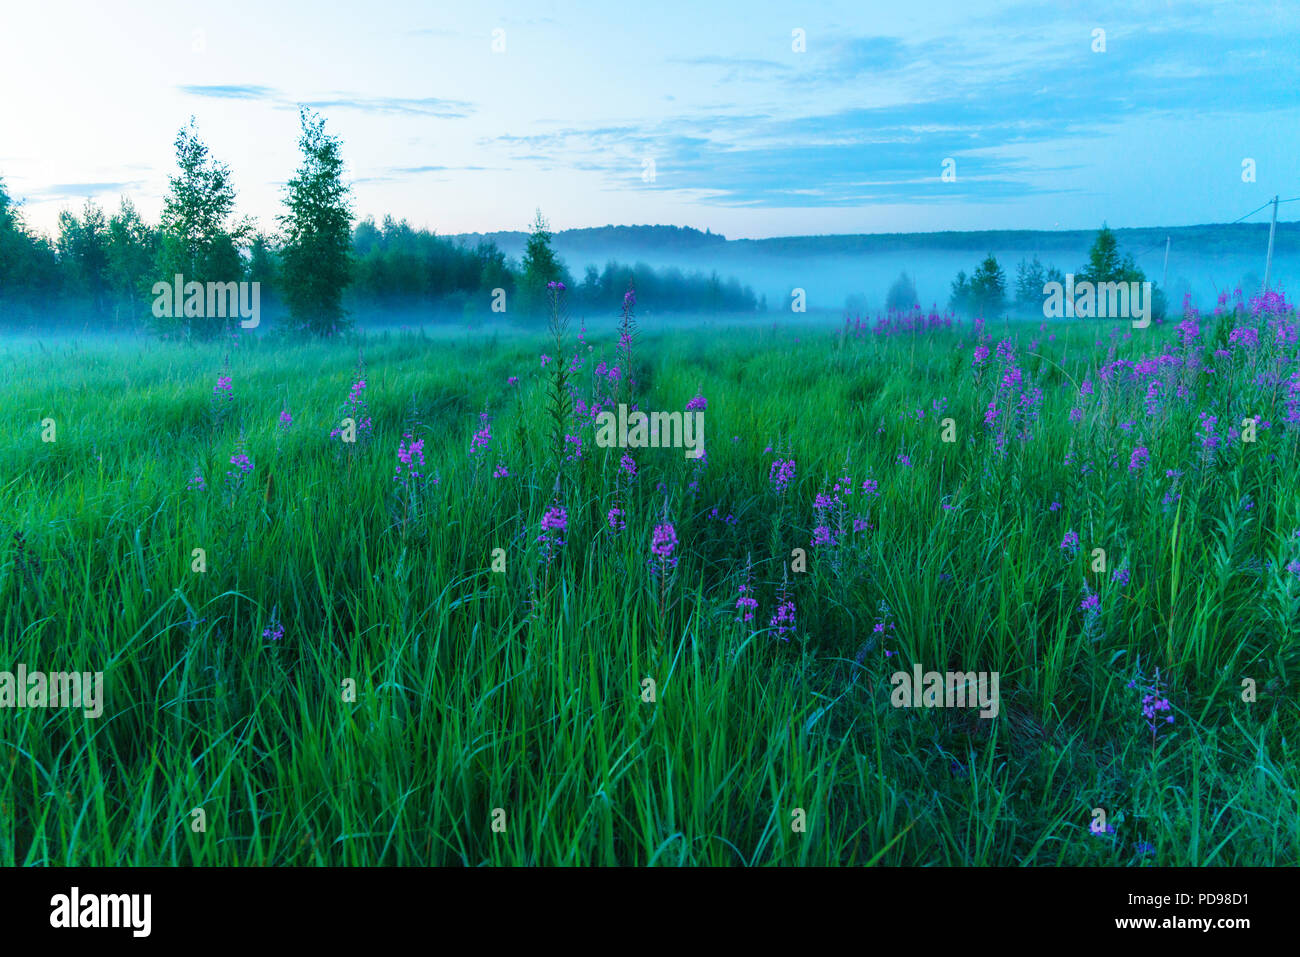 Misty romantico paesaggio con fioritura fireweed (Chamaenerion angustifolium), betulle ed erba verde in estate, la regione di Mosca, Russia Foto Stock